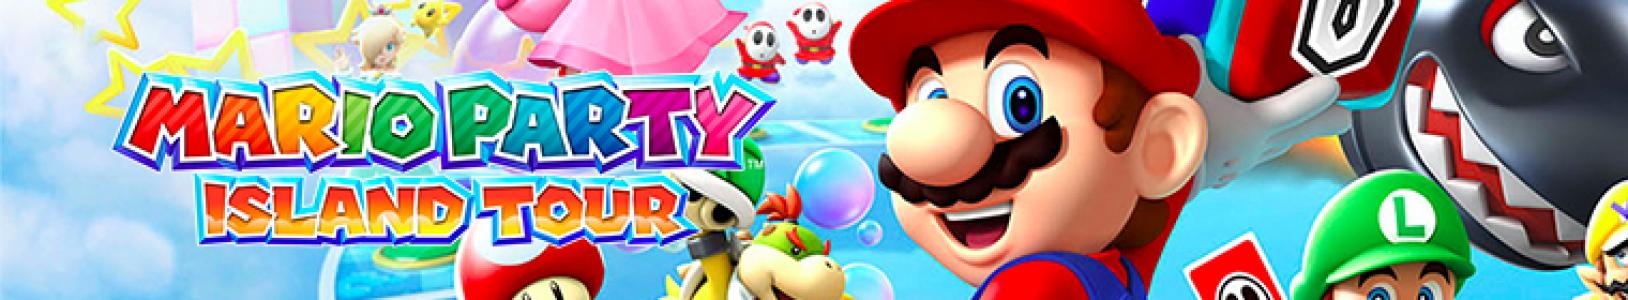 Mario Party: Island Tour banner